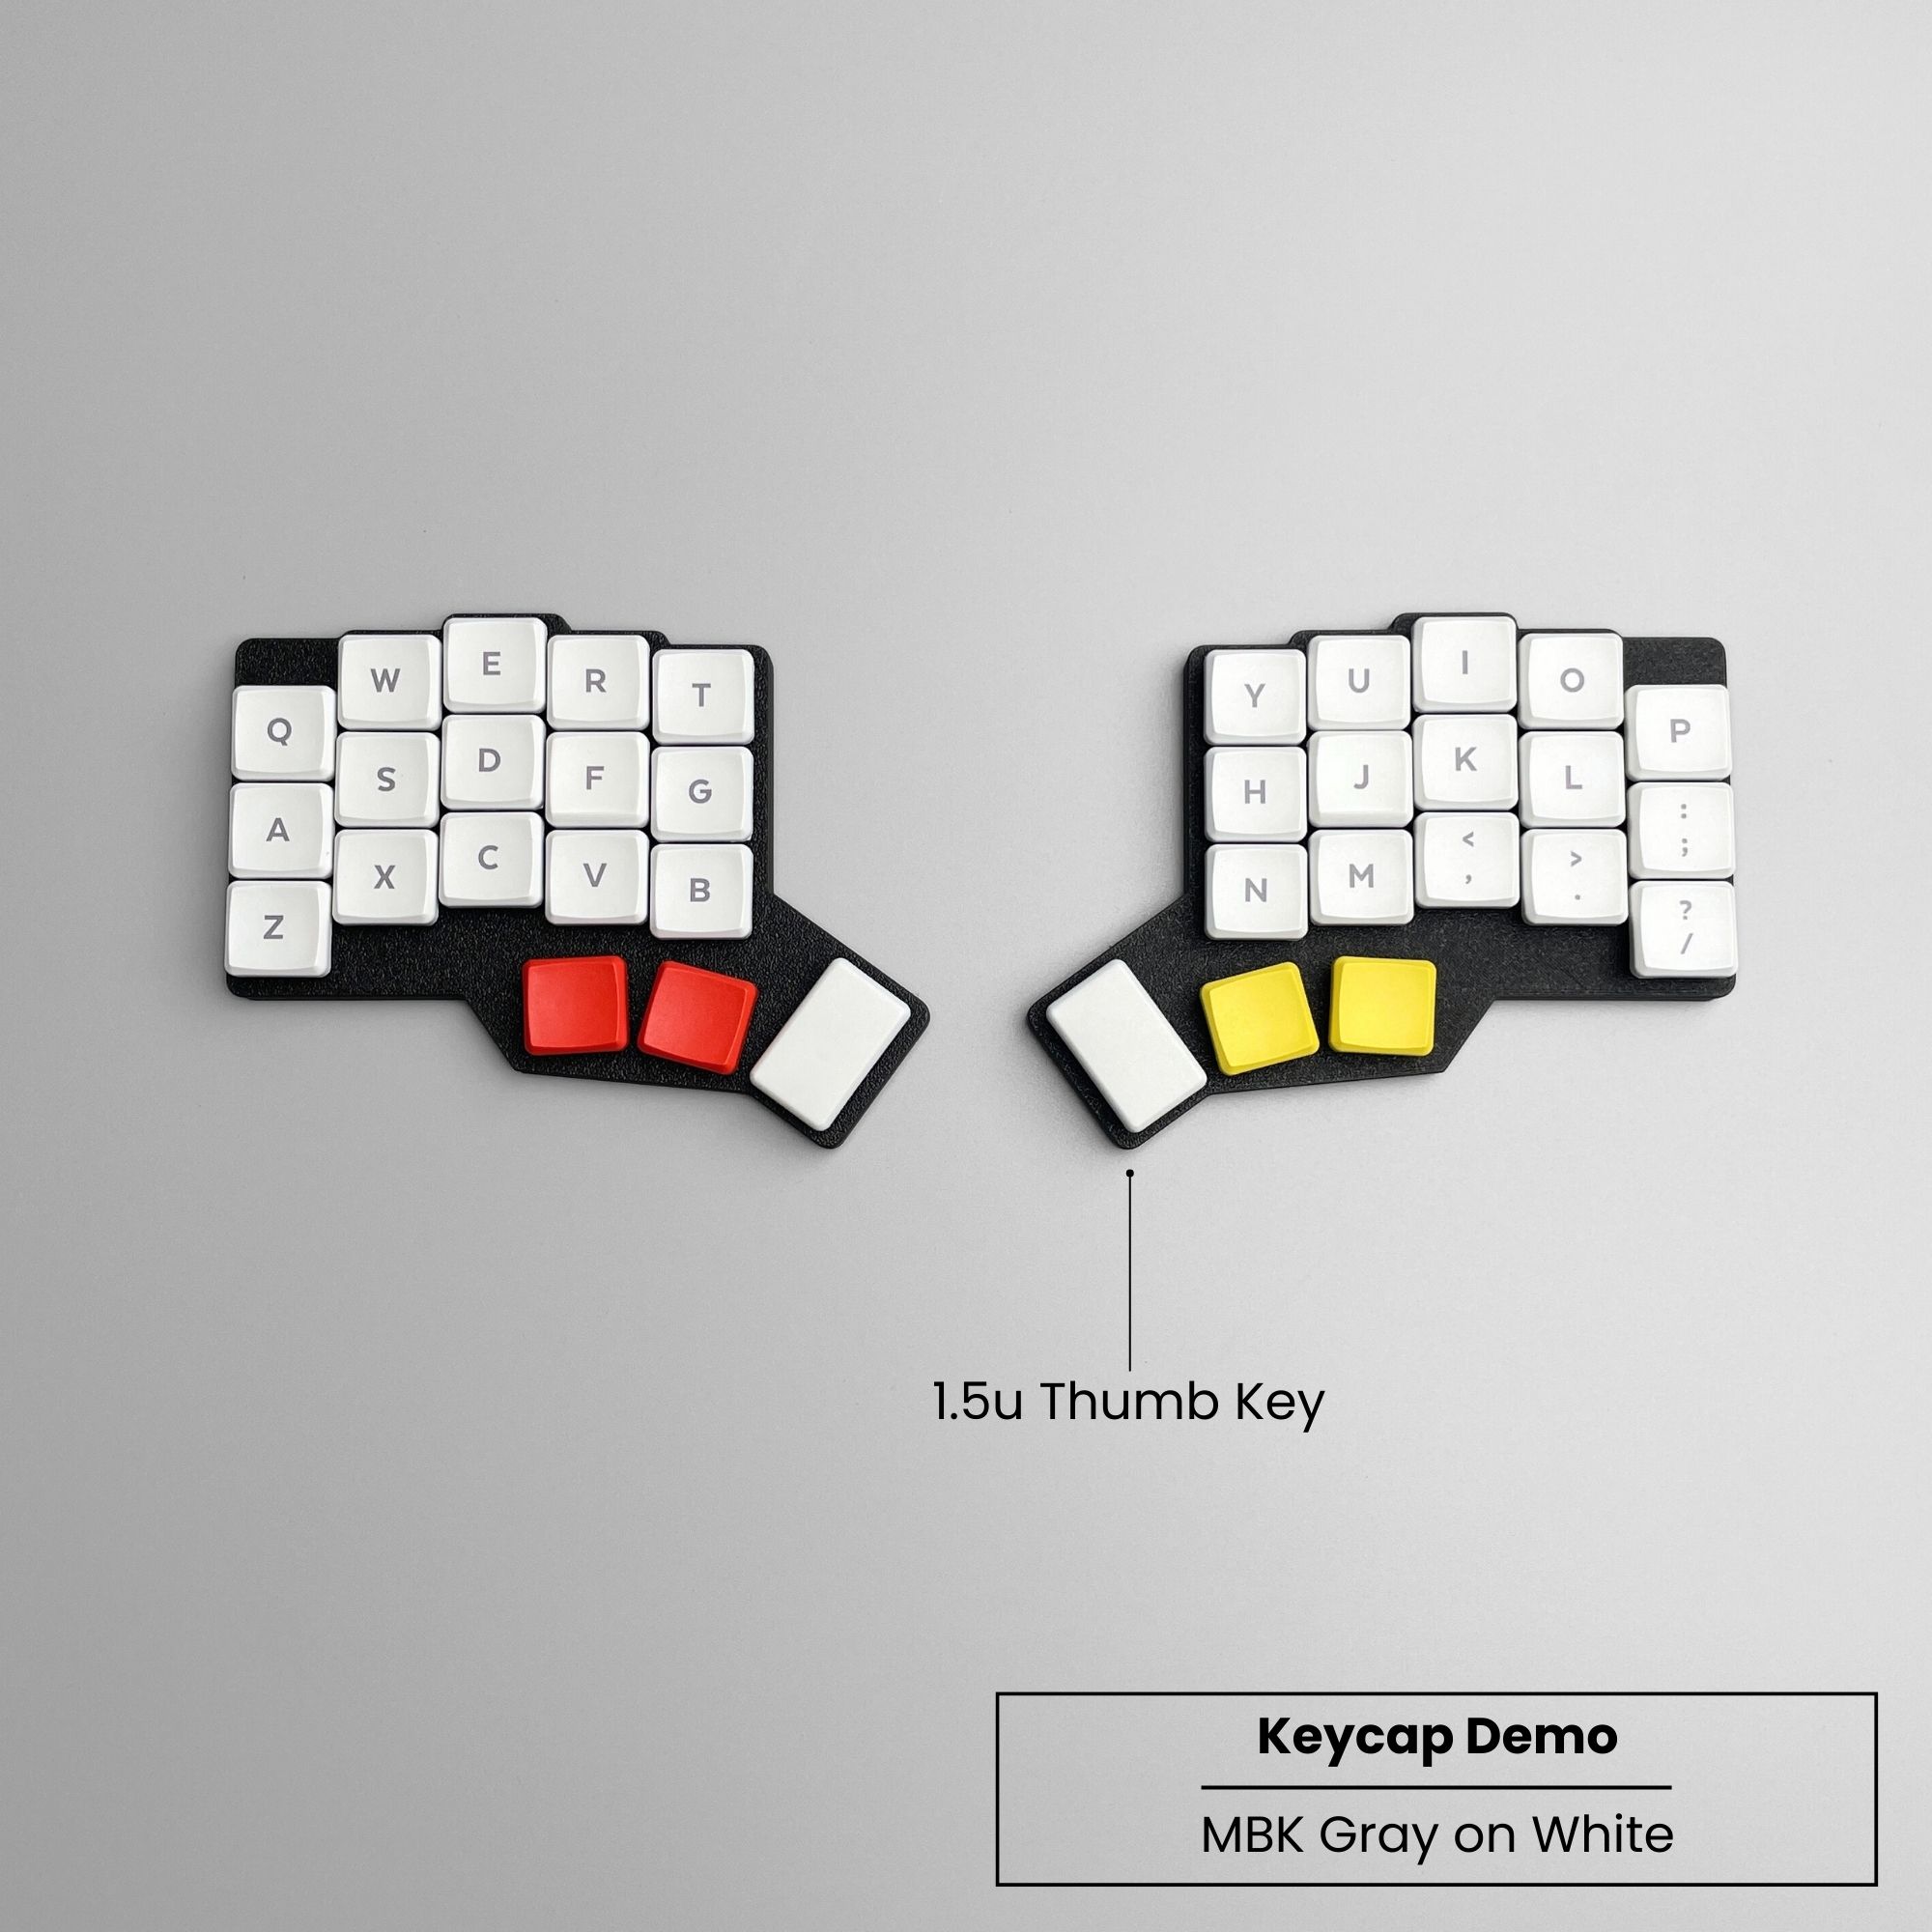 3W6 Hotswap Split Keyboard